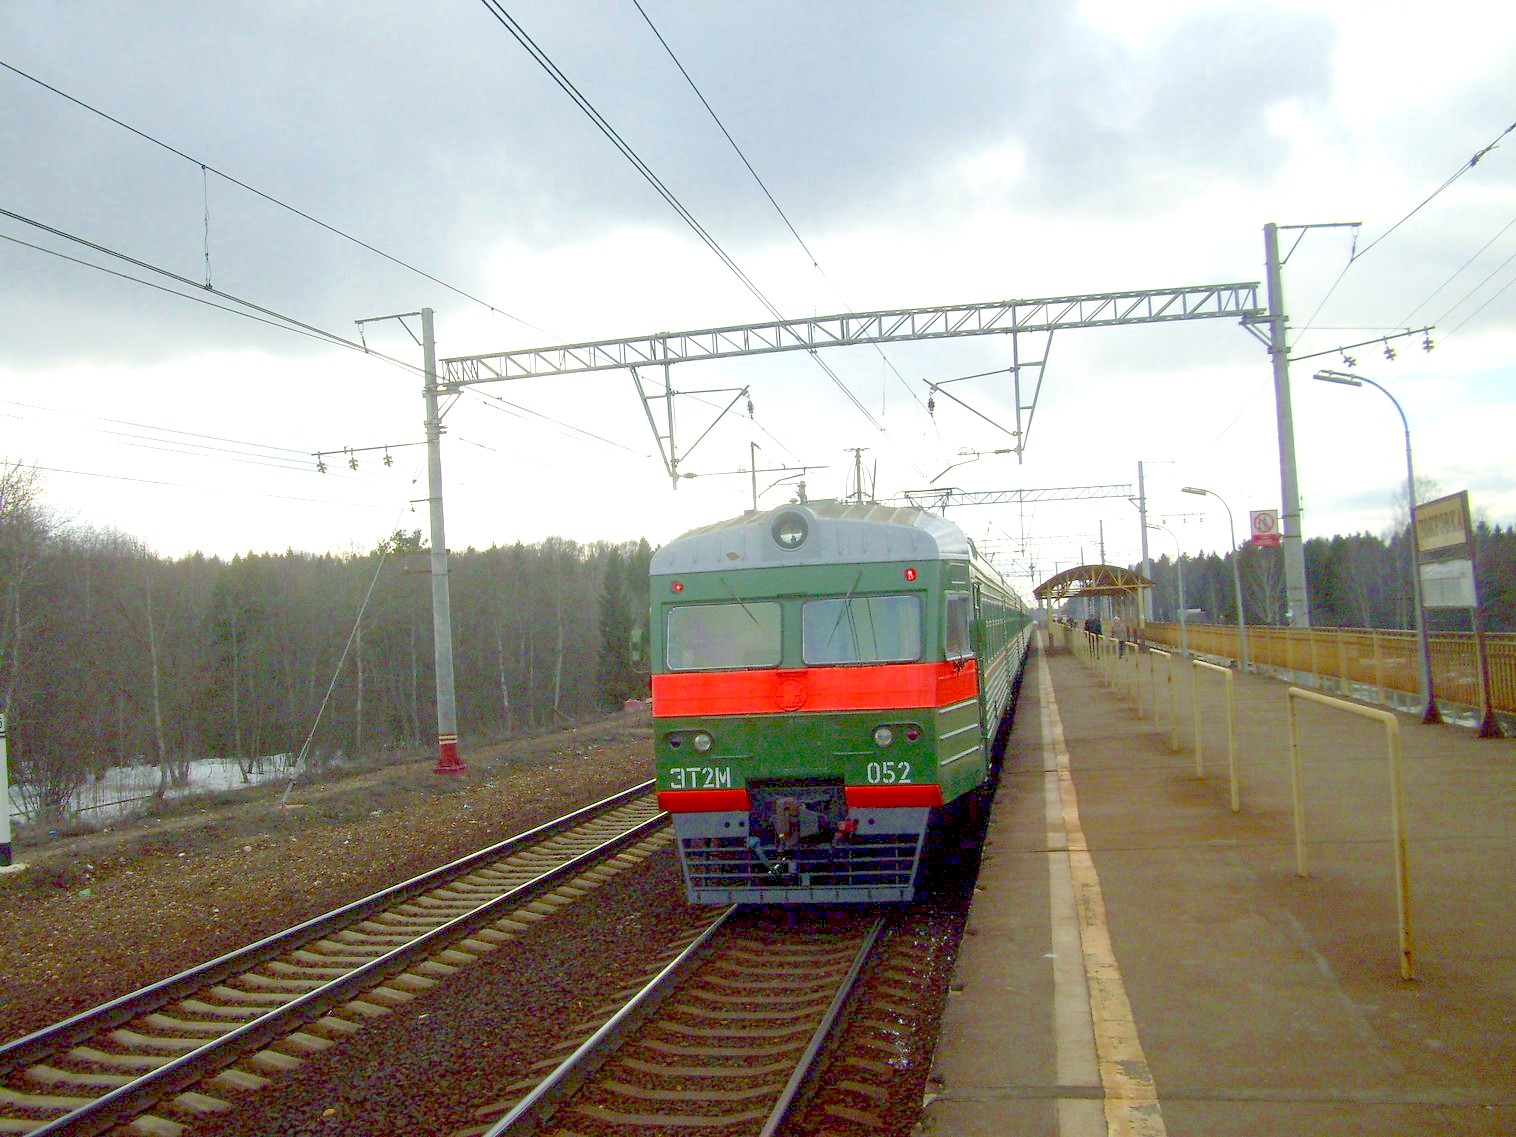 Петербурго-Московская железнодорожная линия на территории Московской области  — станция Покровка: фотографии (страница 7, сделаны в 2011 году)